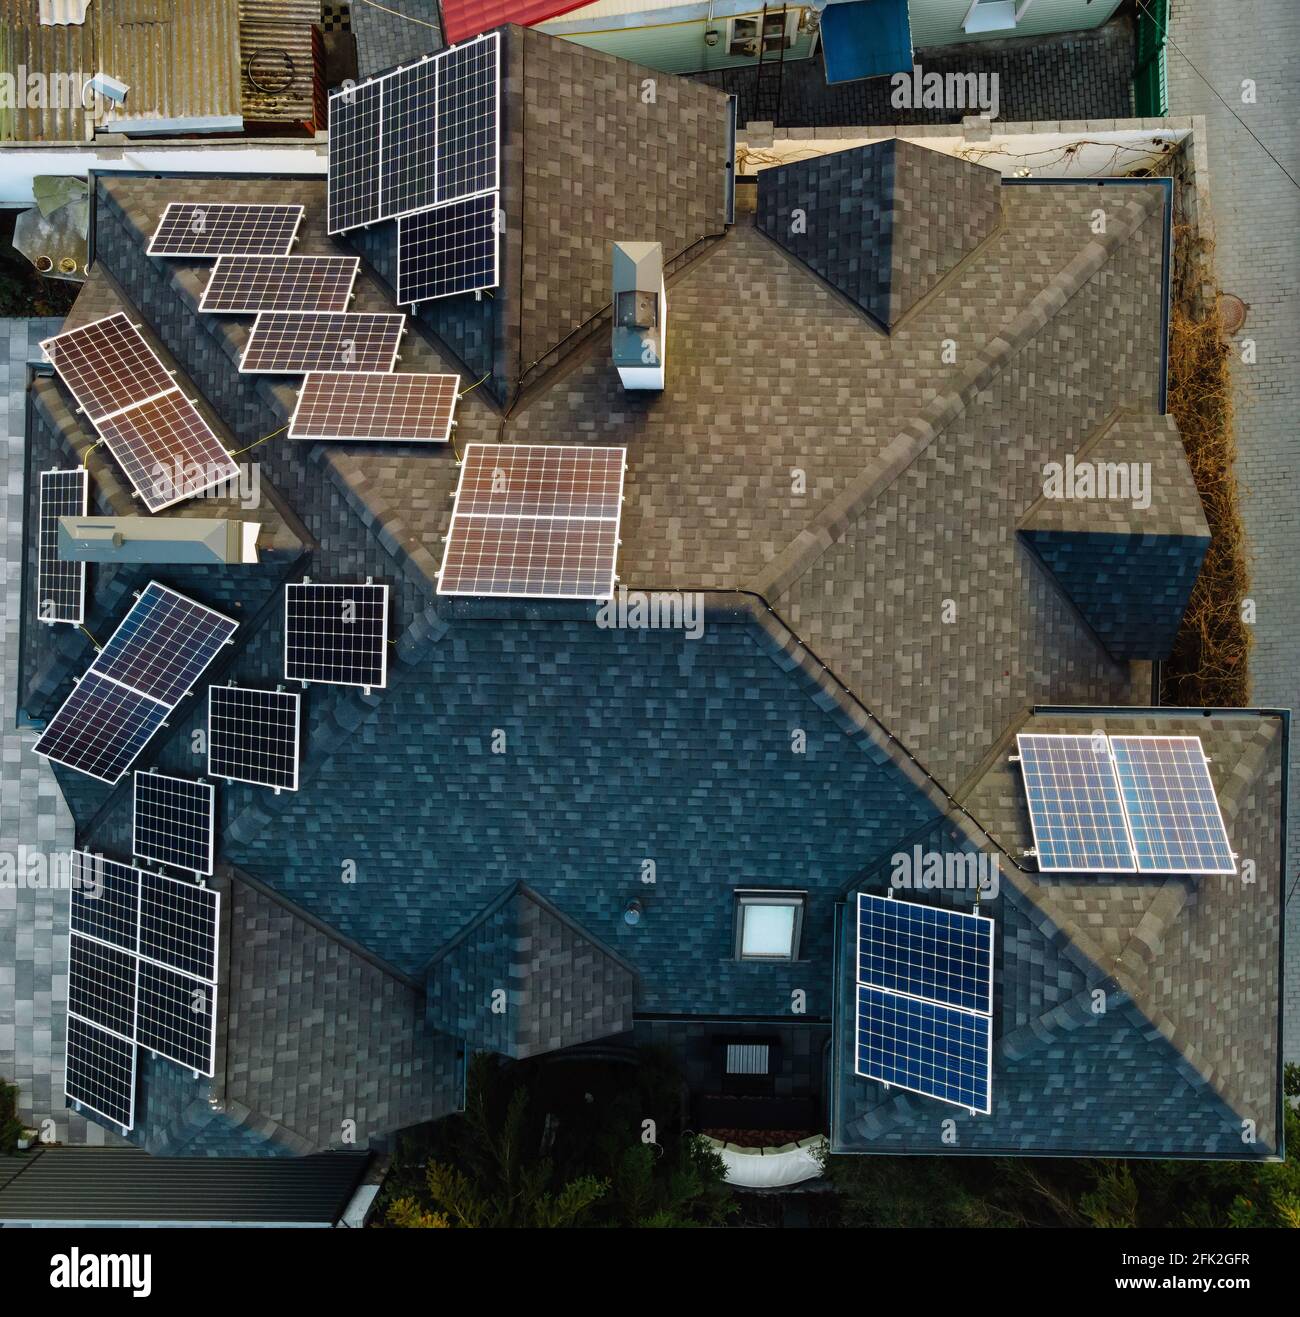 Luftaufnahme von Photovoltaik-Solarzellen auf einem eigenen Hausdach in einer kleinen europäischen Stadt. Konzept für erneuerbare grüne Energie Stockfoto